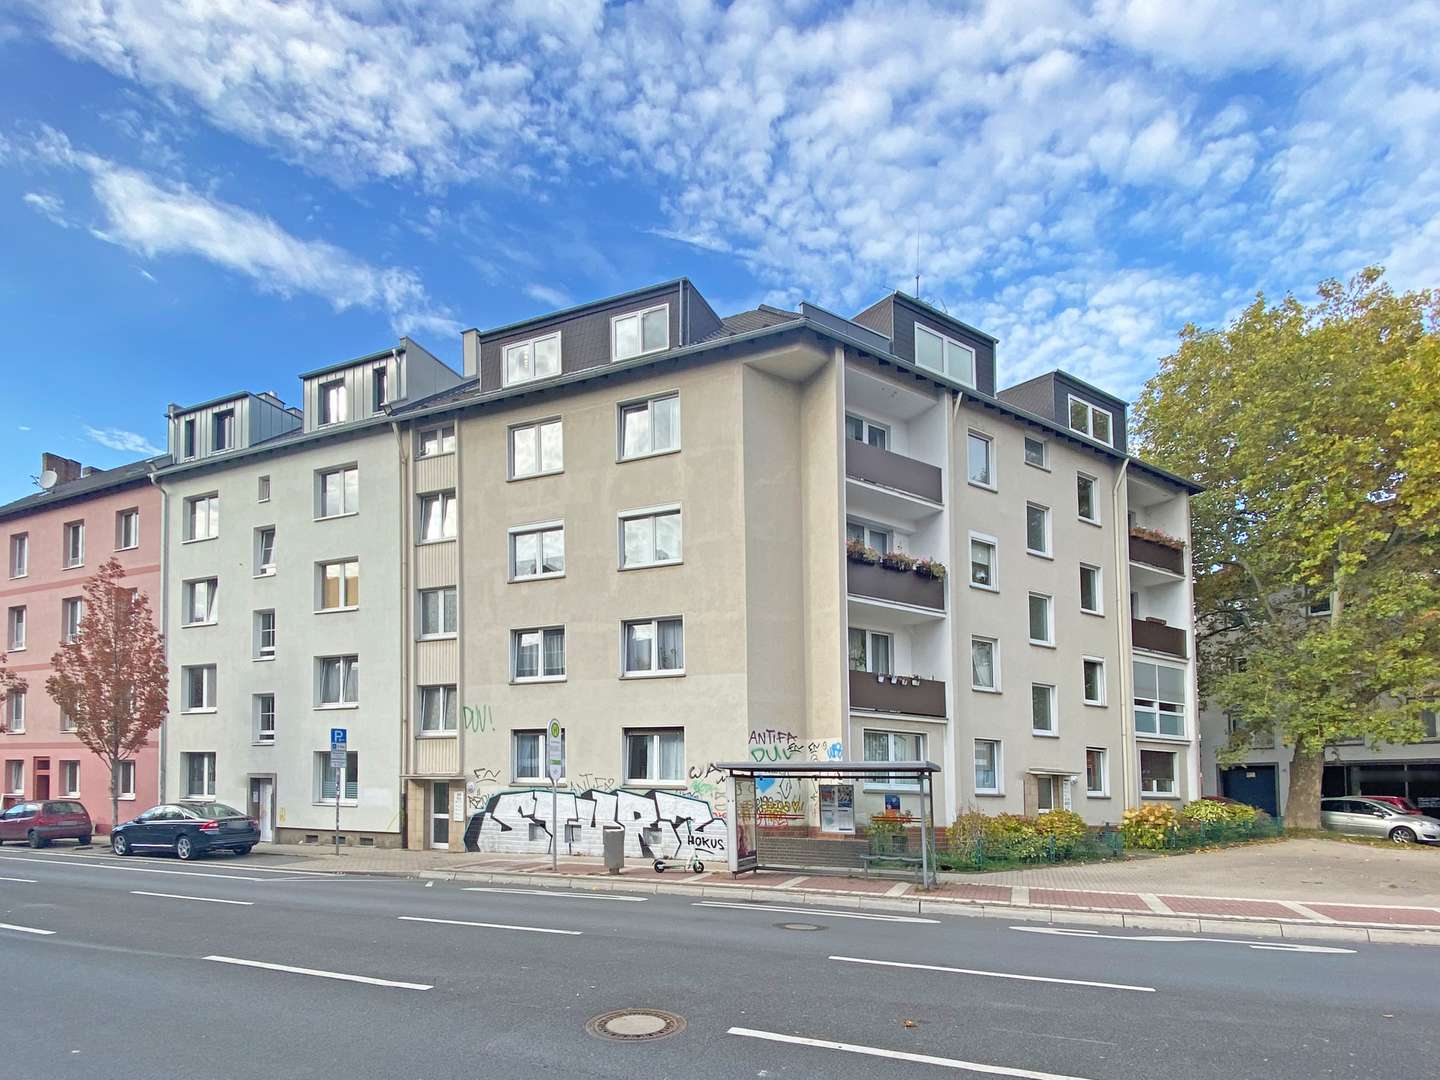 Außenansicht - Etagenwohnung in 44789 Bochum / Ehrenfeld mit 67m² als Kapitalanlage günstig kaufen